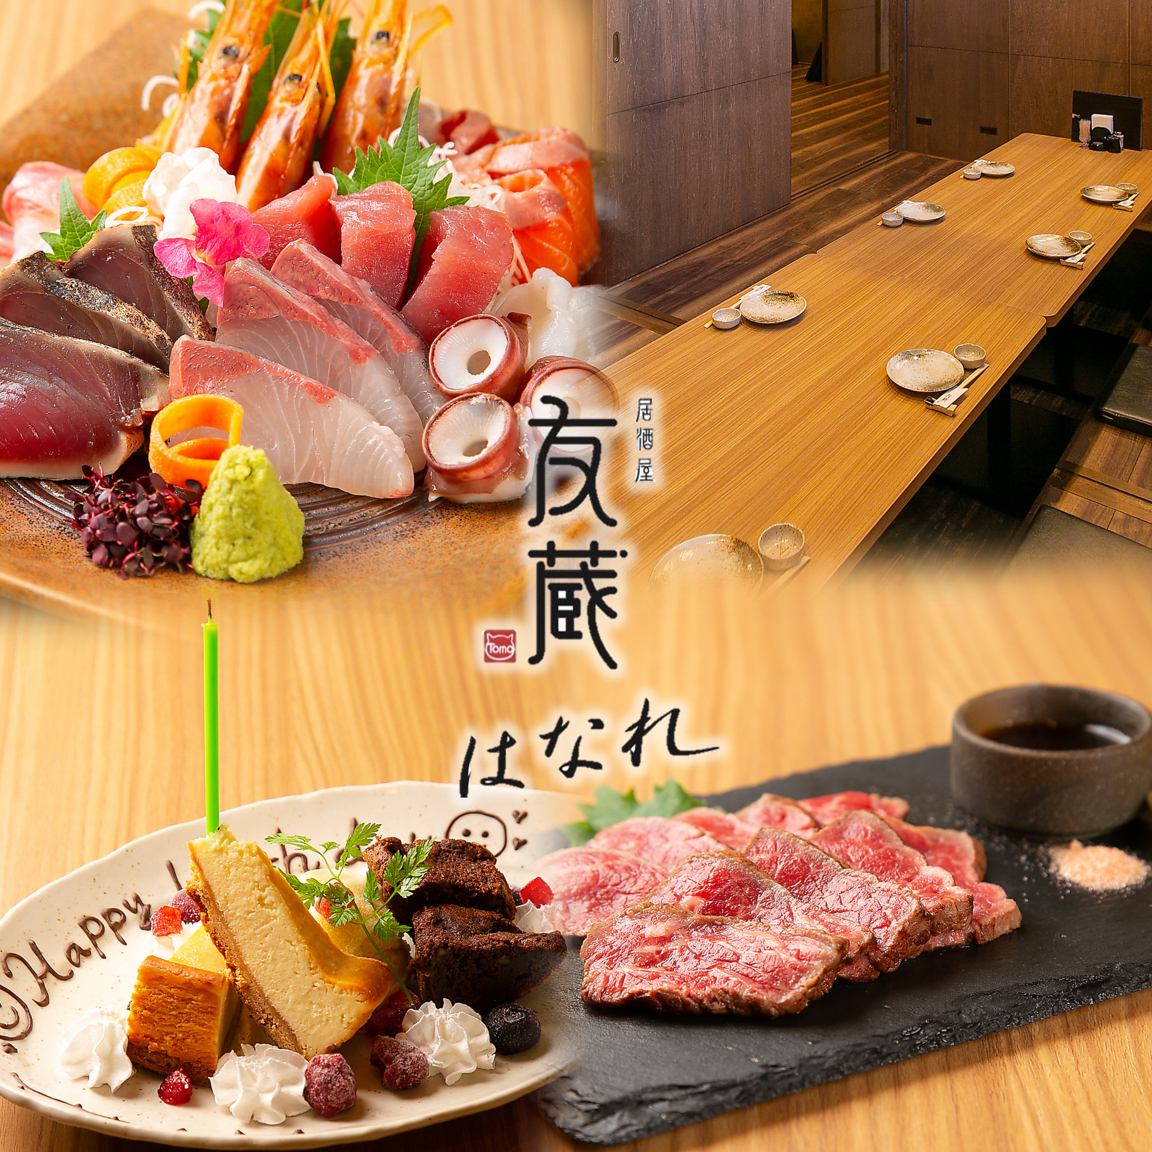 在包廂內，您可以充分享用各種酒精飲料以及使用新鮮的魚、伊賀牛肉和時令食材製成的特色菜餚。